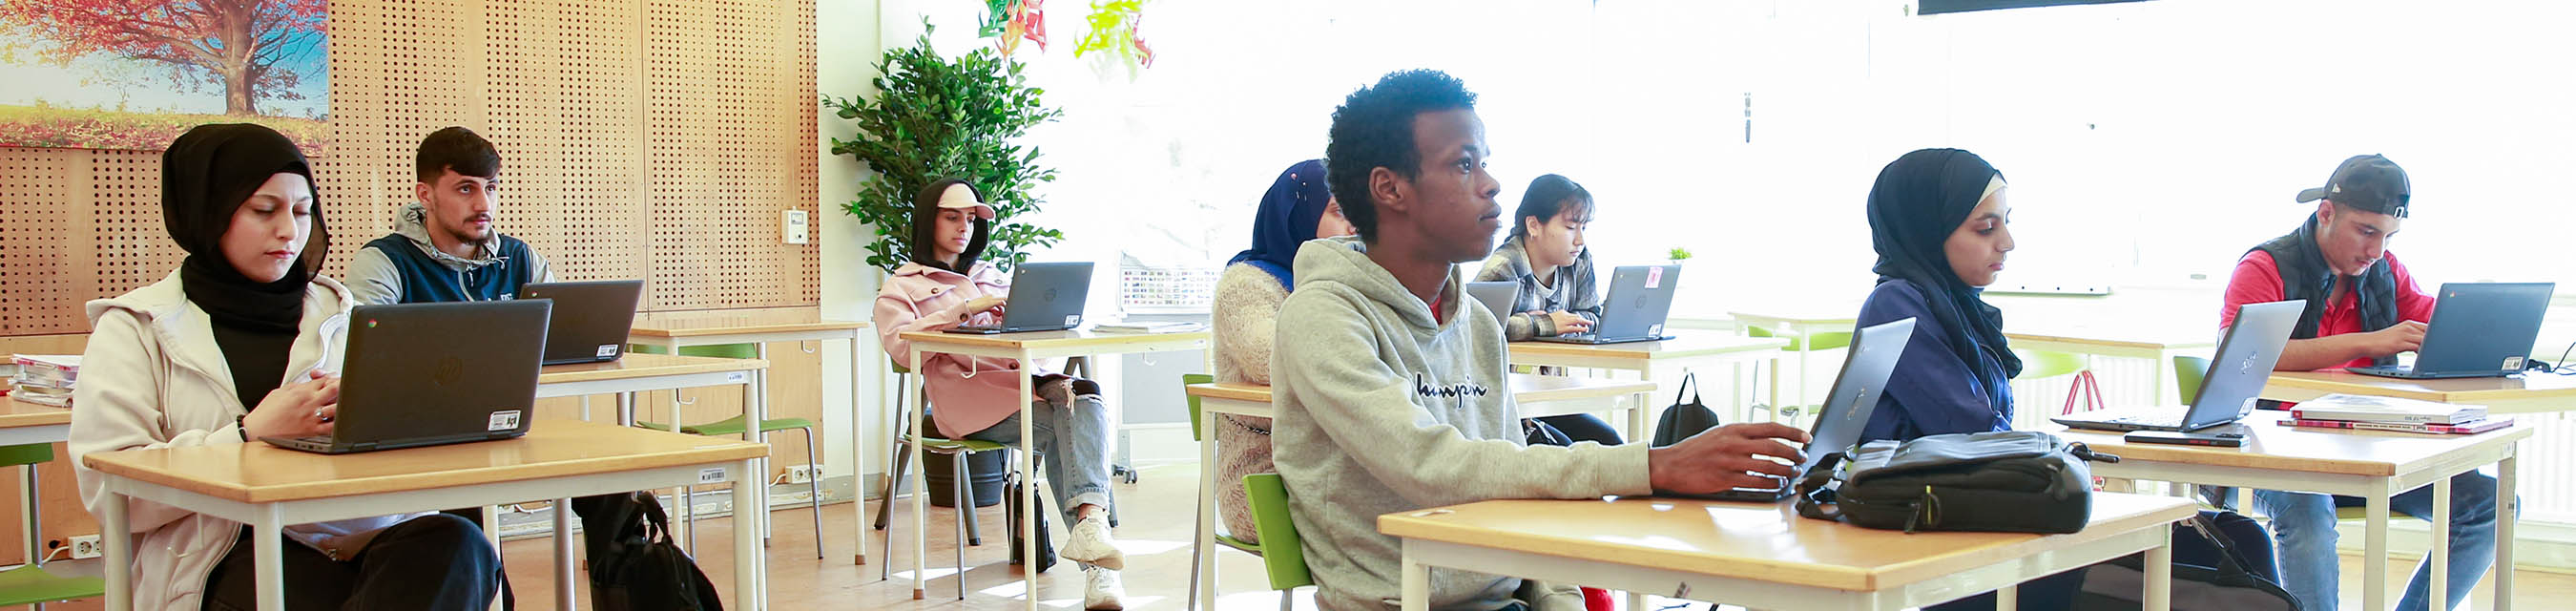 En grupp elever sitter i ett klassrum. Några tittar upp och ser ut att lyssna på en lärare. Andra jobbar fokuserat med skolarbete på dina datorer. 